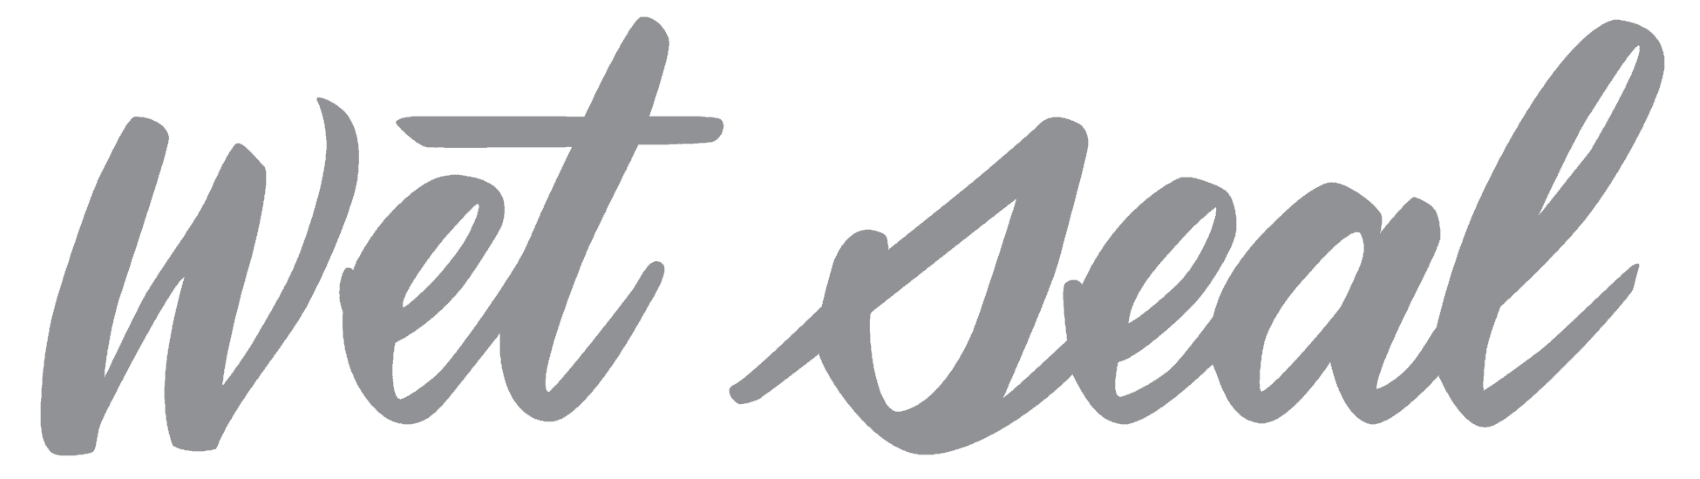 Wet Seal logo, logotype